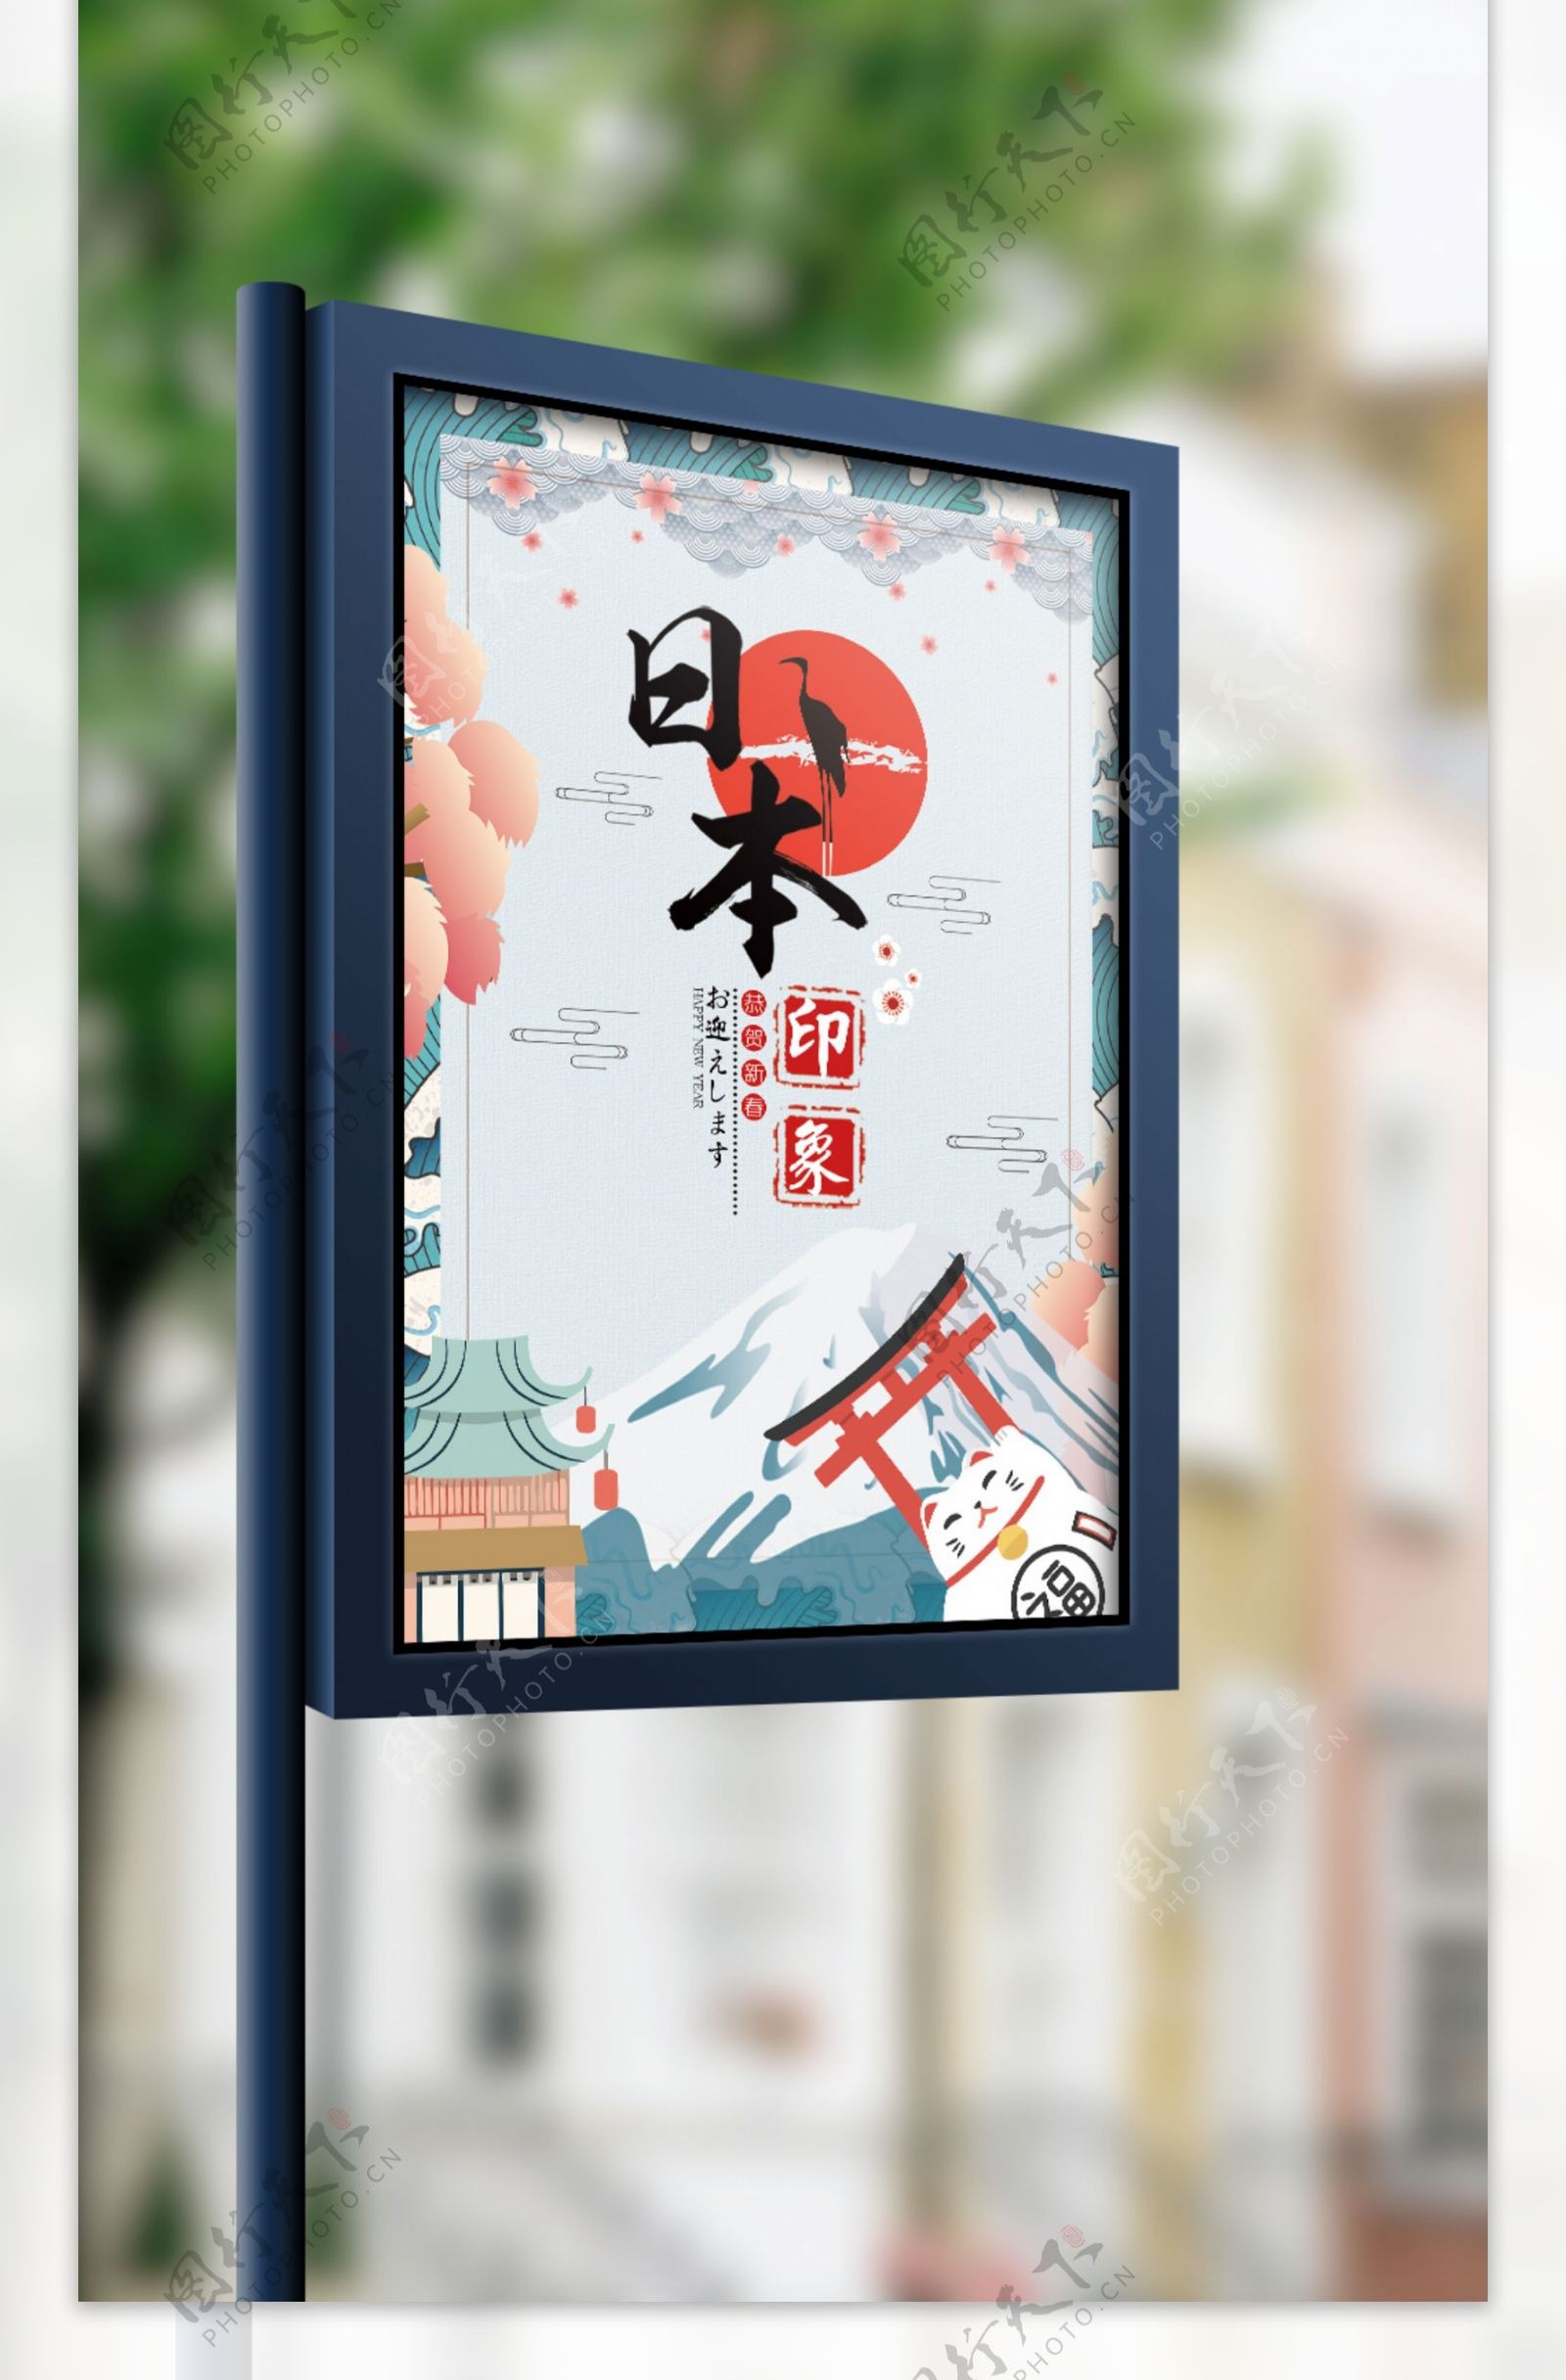 和风手绘日本旅游日本印象宣传海报